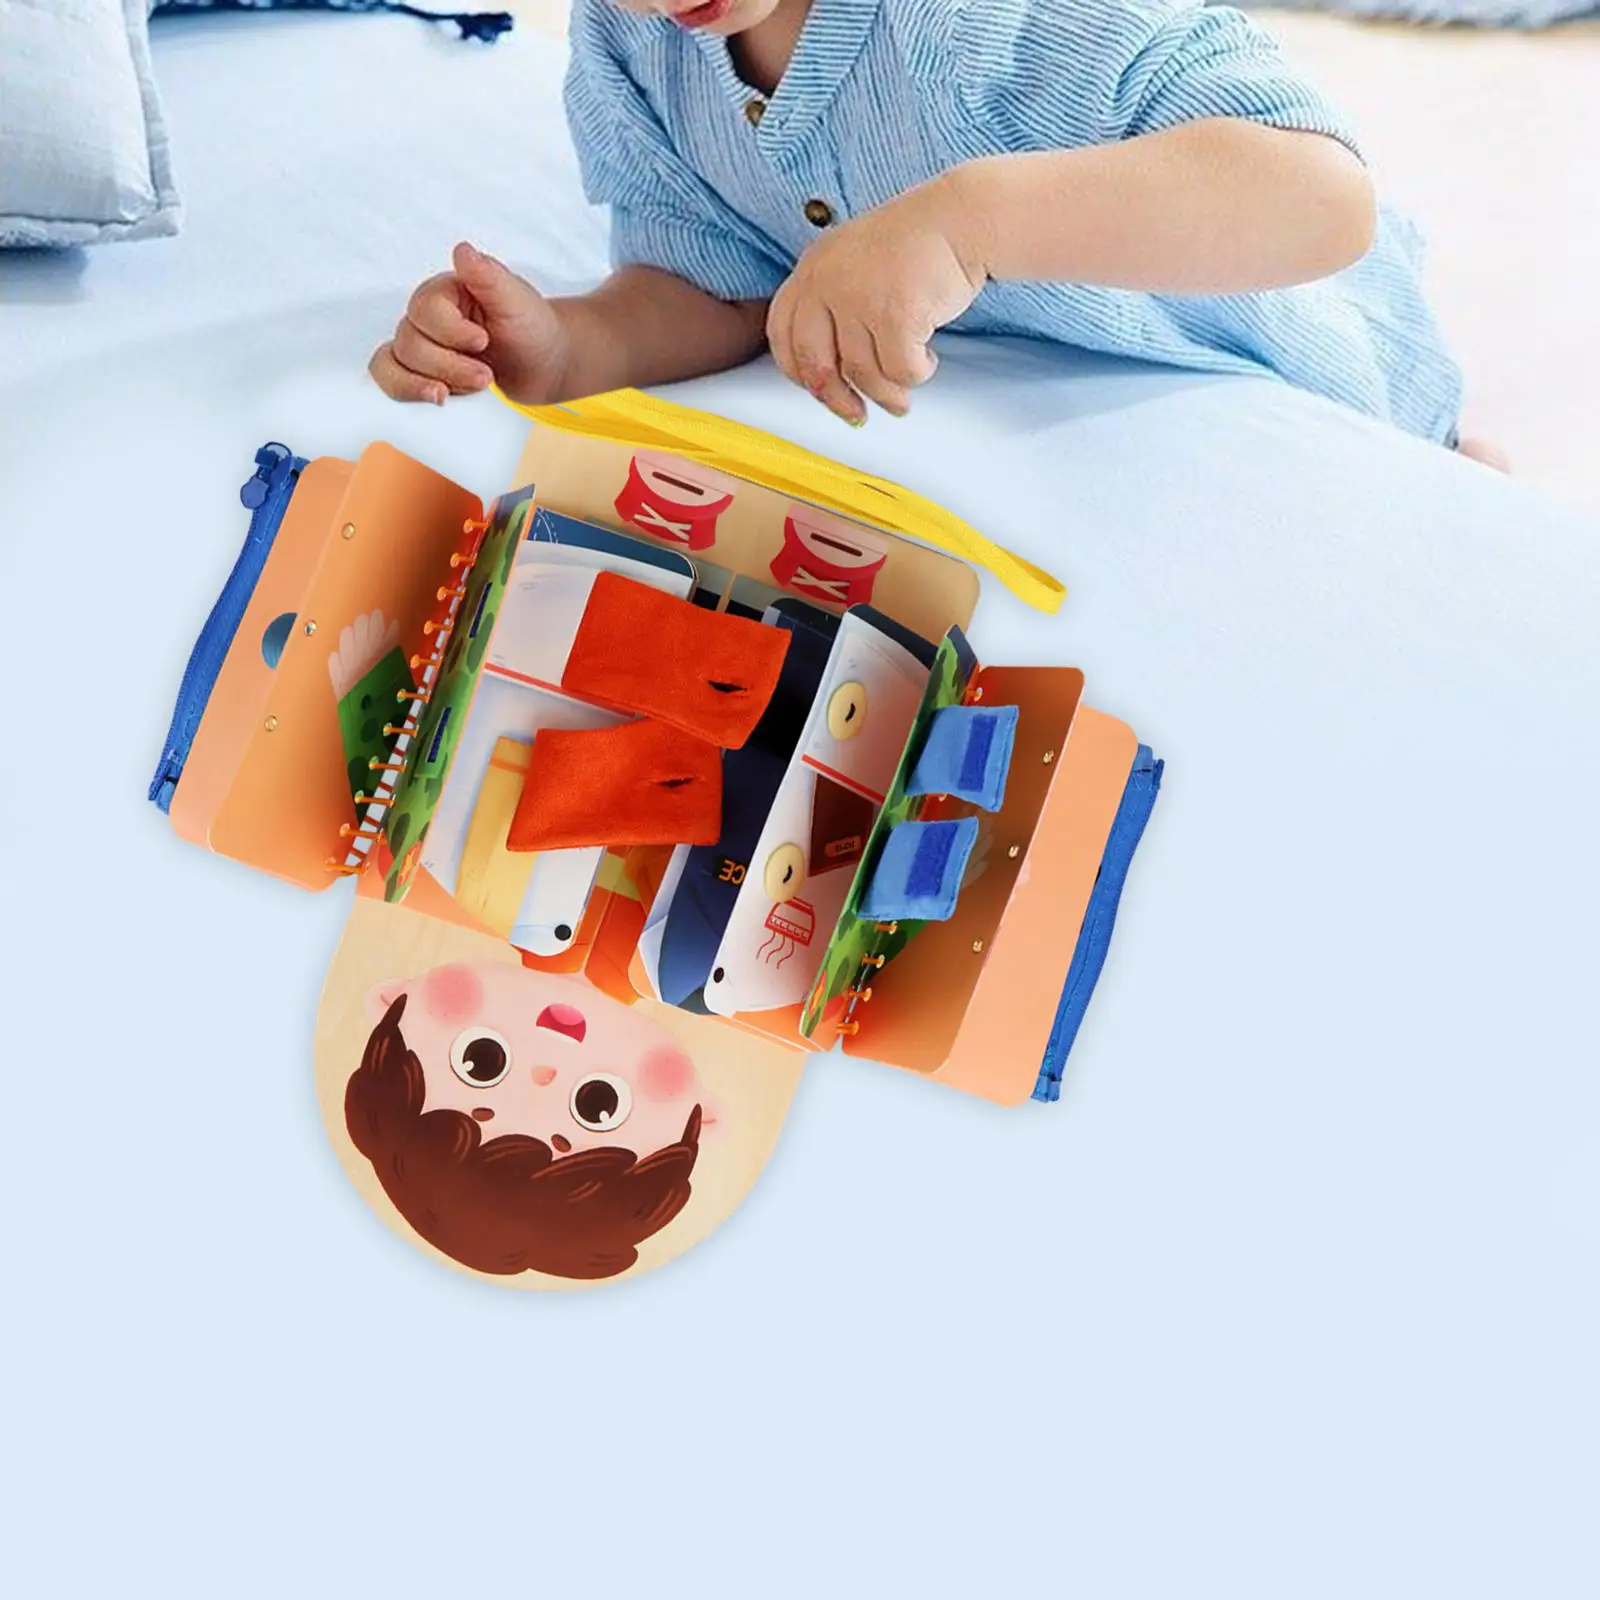 子供、子供のアクティビティのおもちゃ、男の子と女の子のための教育用ビジーボード